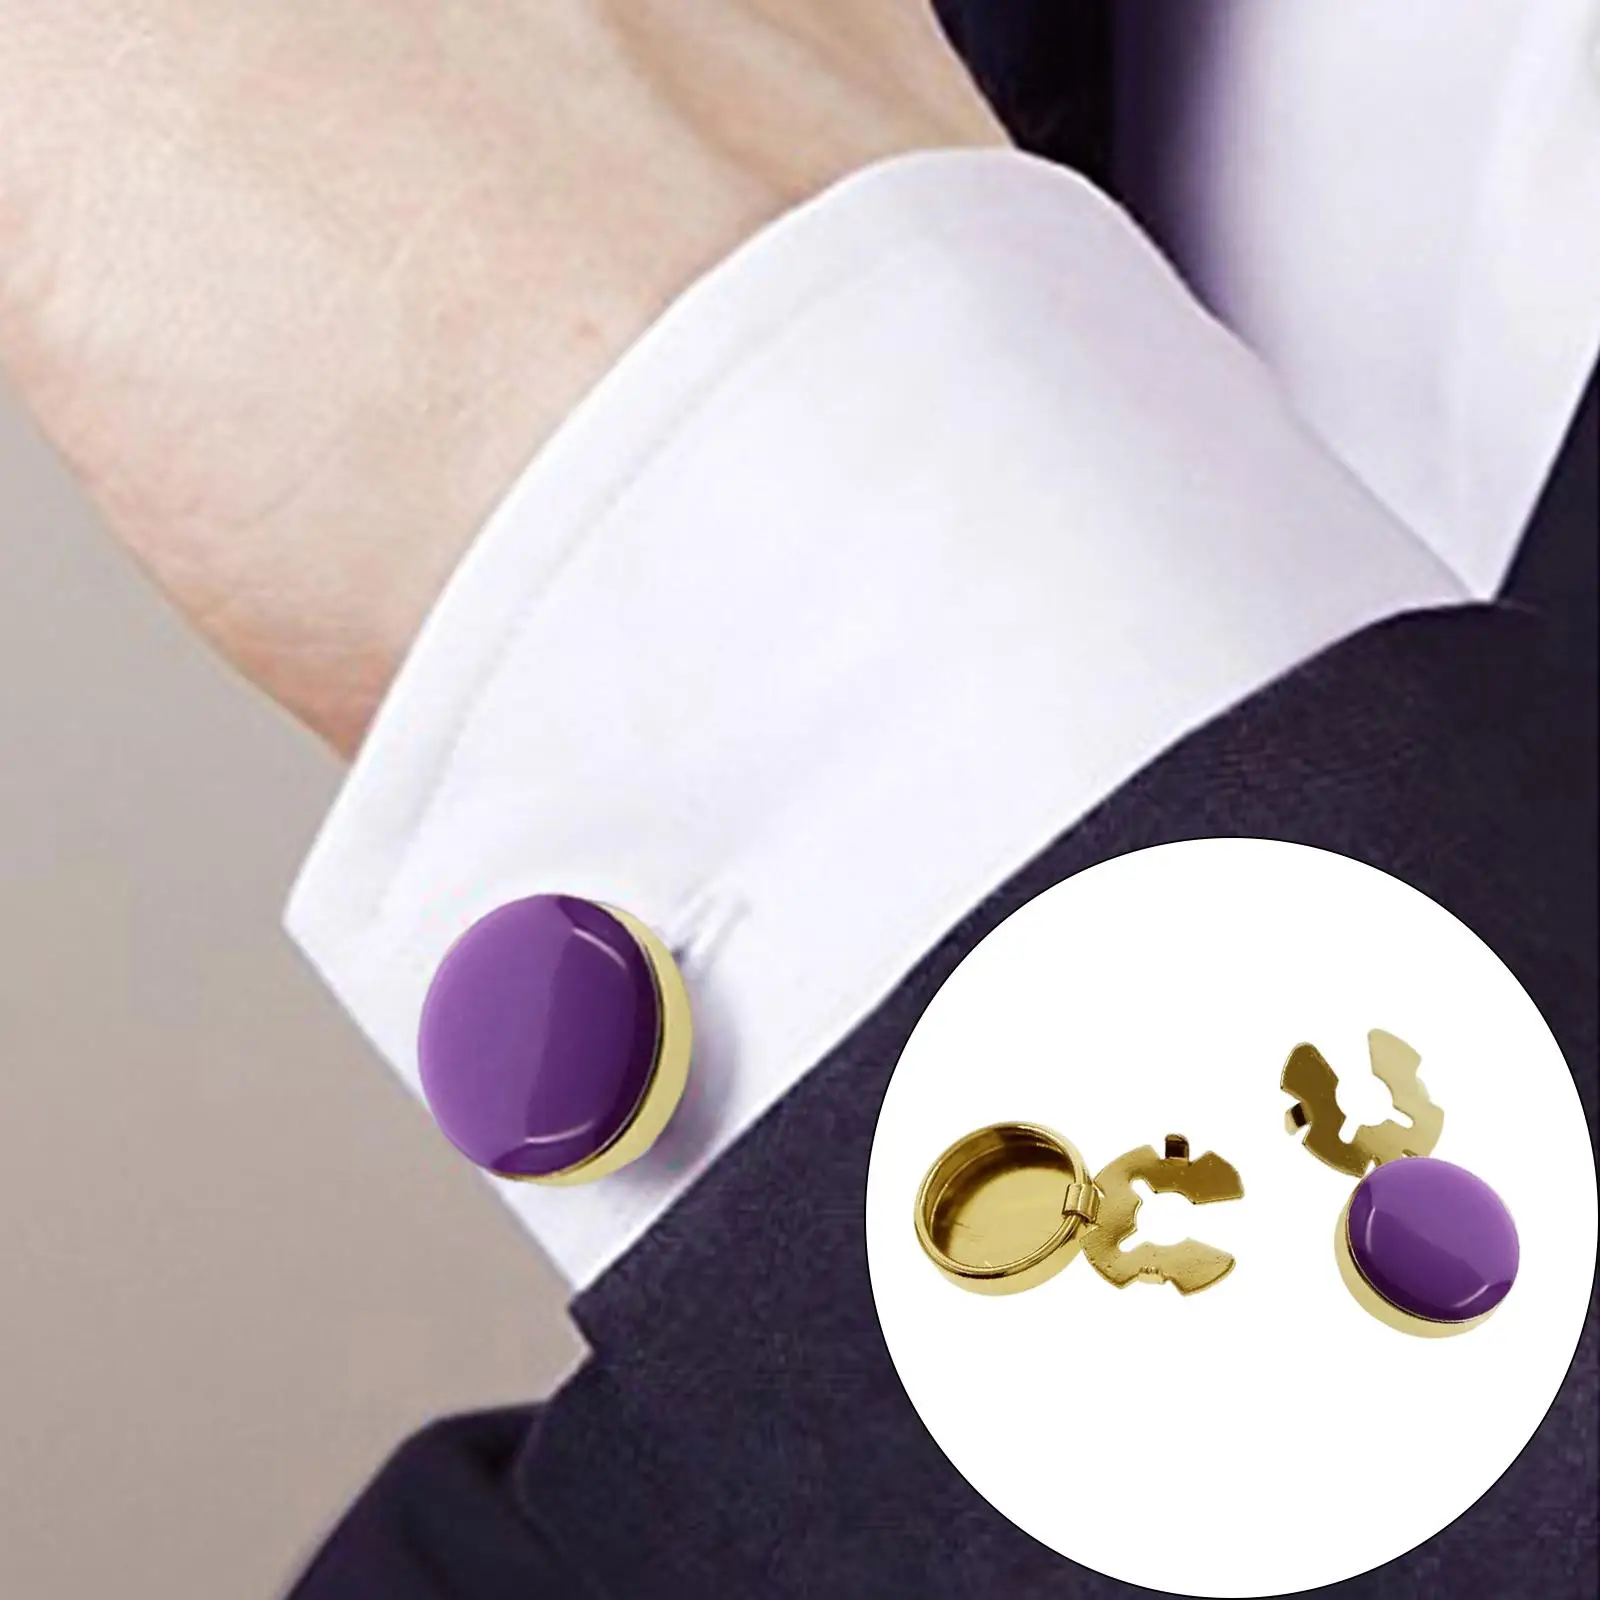 2 Pieces Men Cufflinks Suit Decors Formal Event Button Covers Men Gift